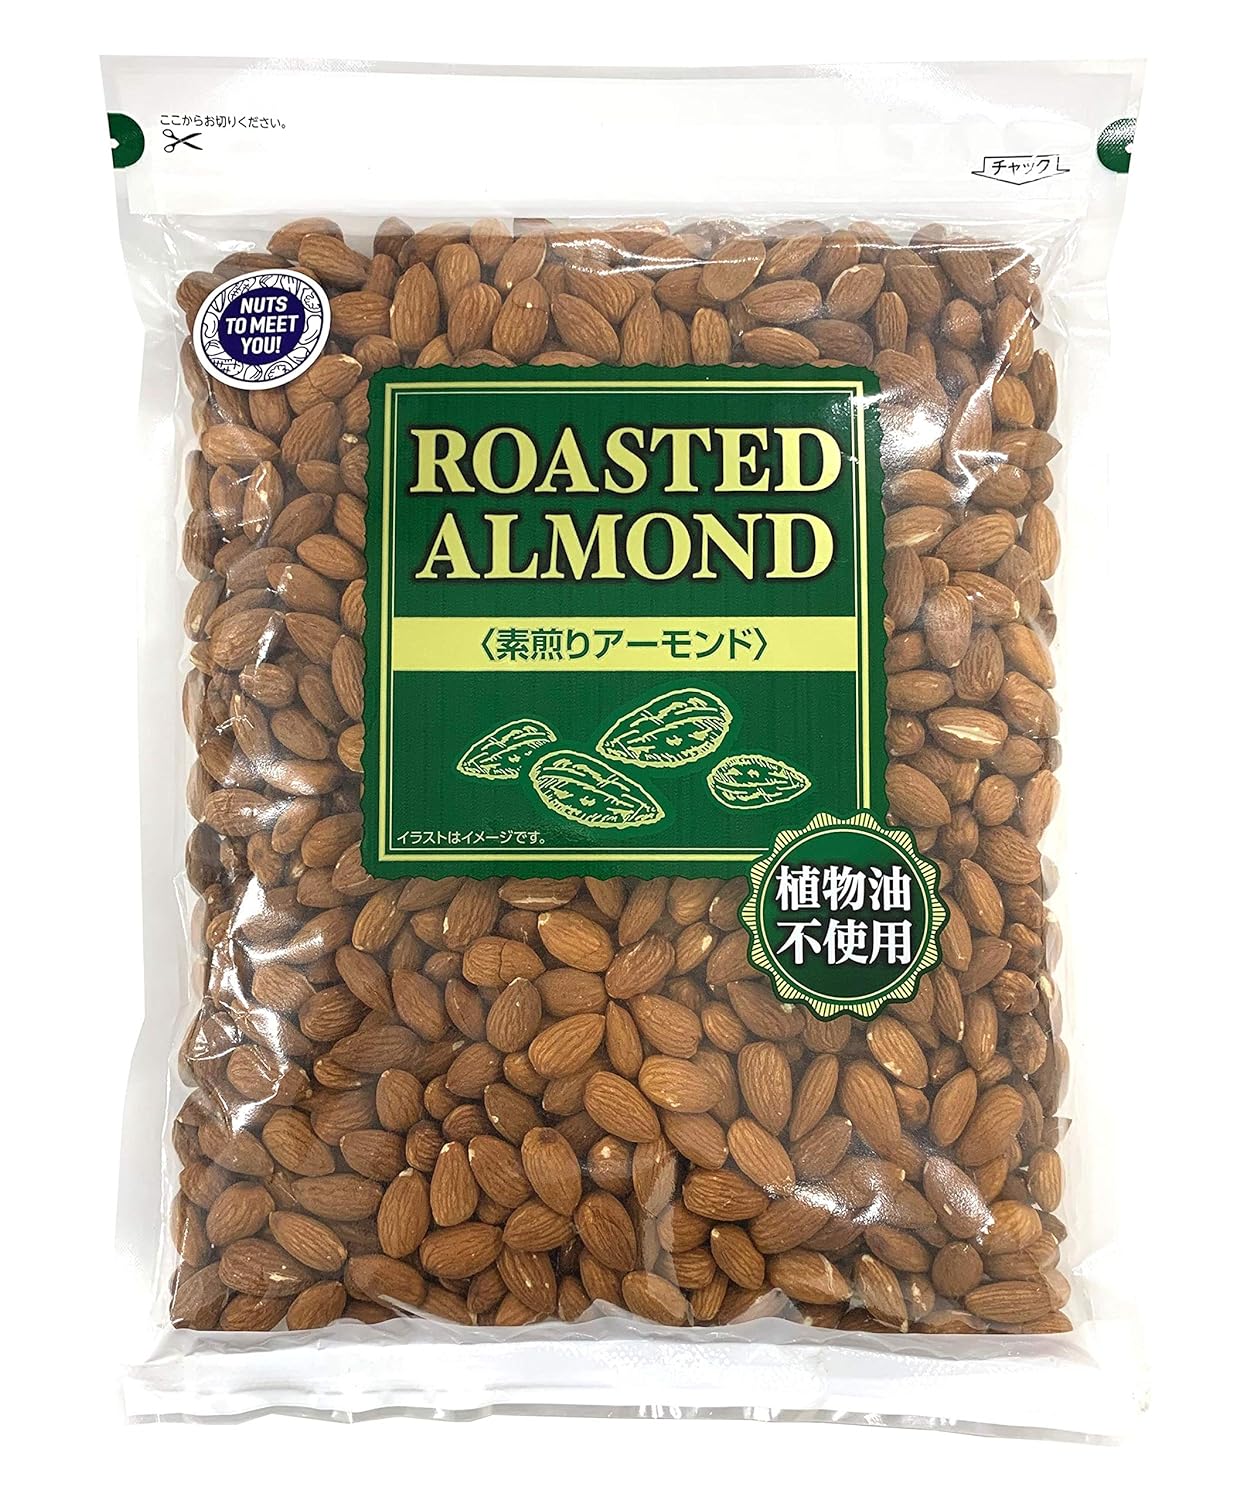 18位：【Amazon.co.jp限定】 NUTS TO MEET YOU アーモンド 1kg 植物油不使用